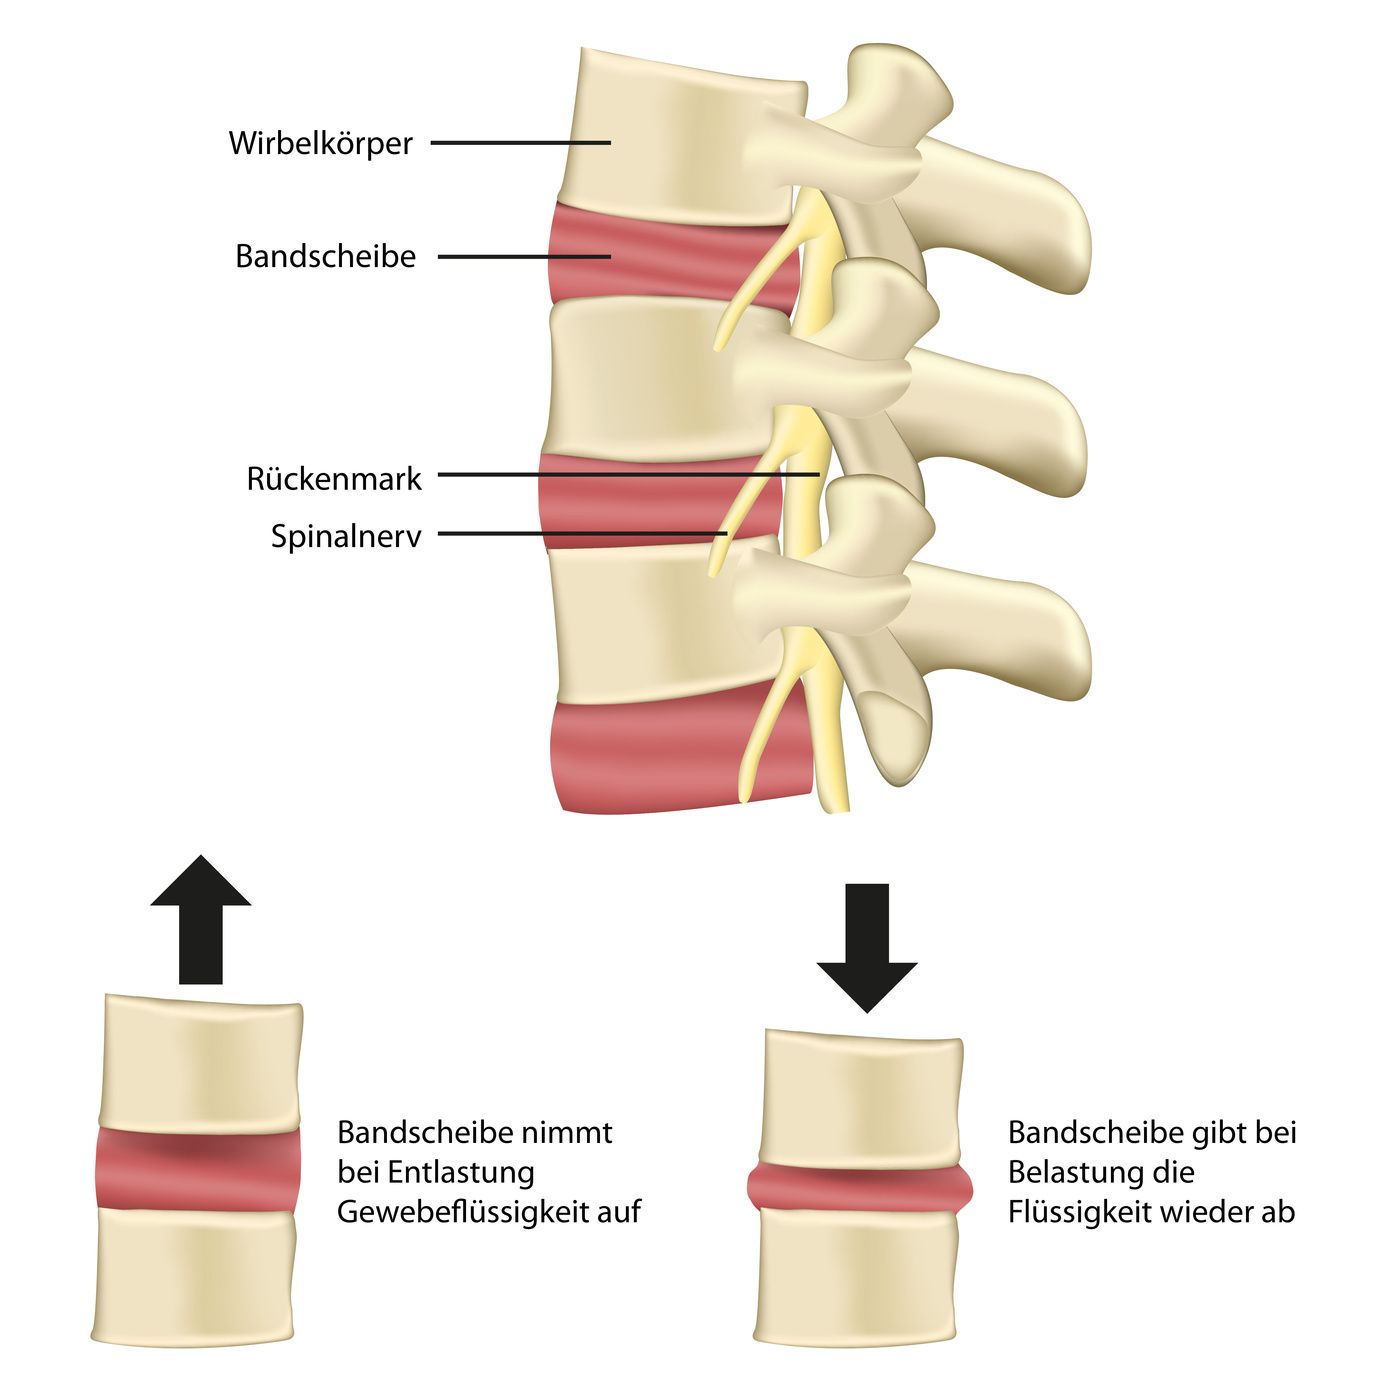 Schematische Darstellung einer Wirbelsäule mit Rückenmark, Spinalnerv und Bandscheiben mit Erklärung der Funktionen.